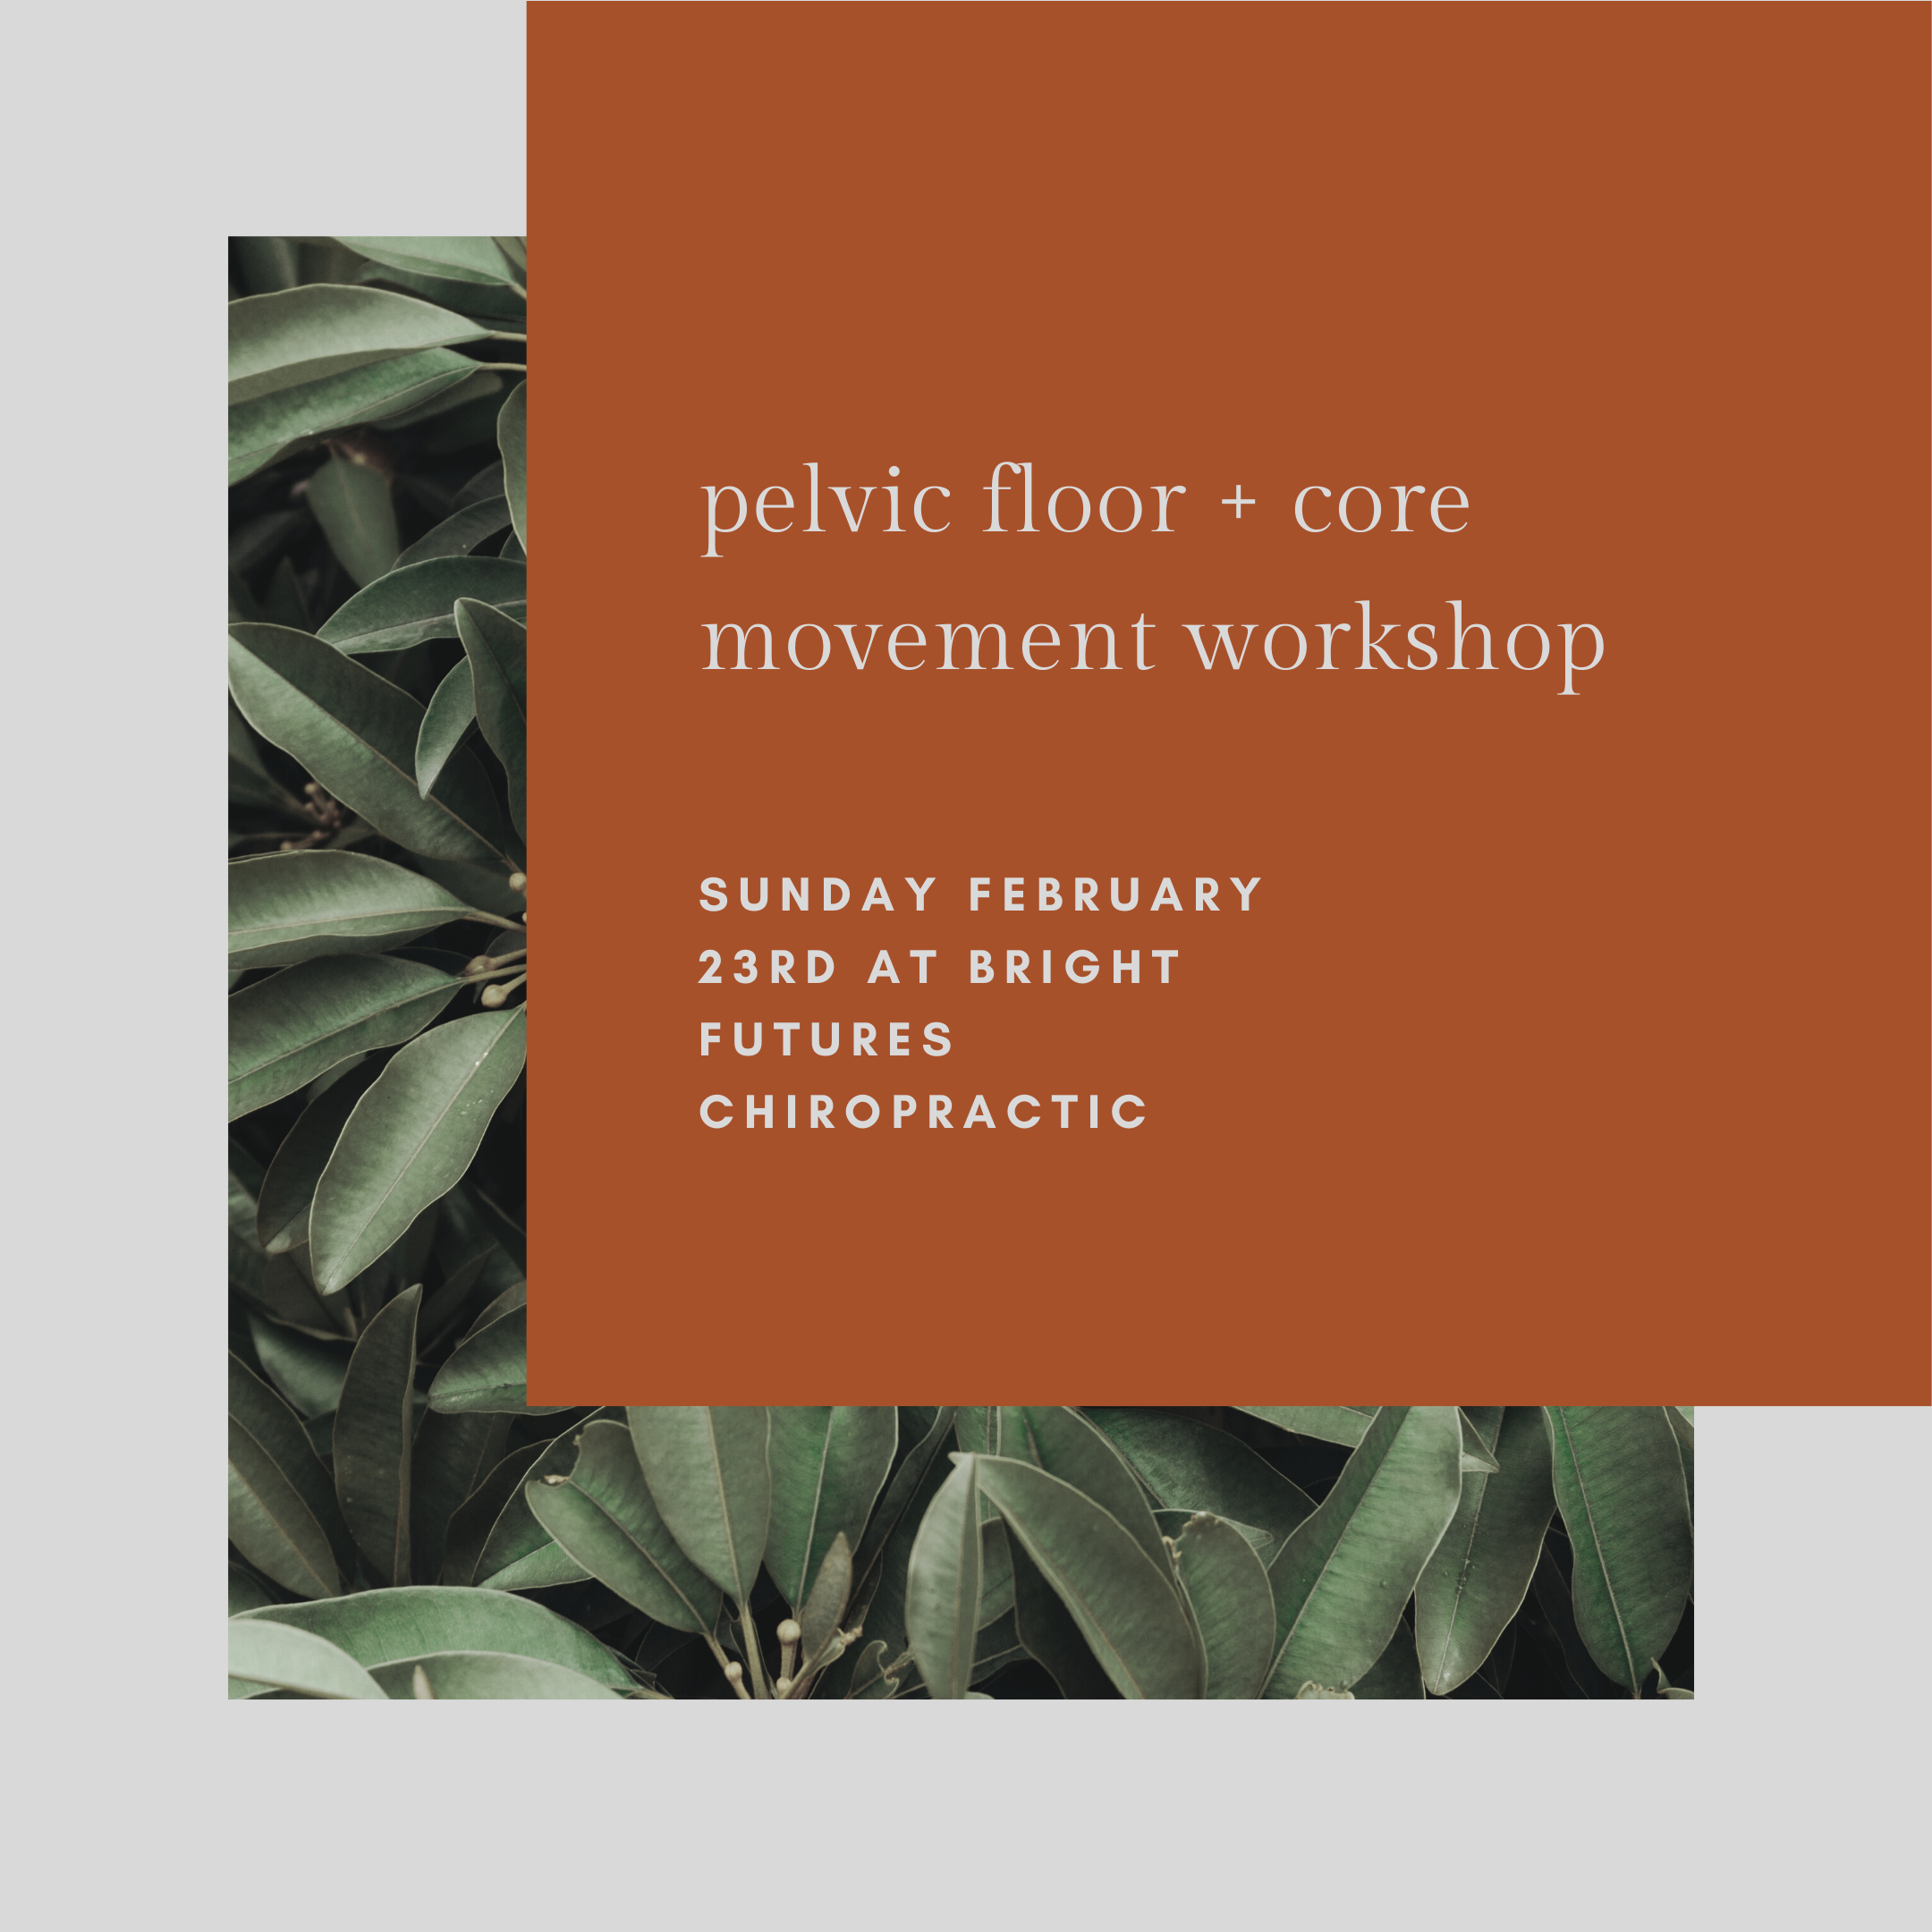 pelvic floor + core movement workshop